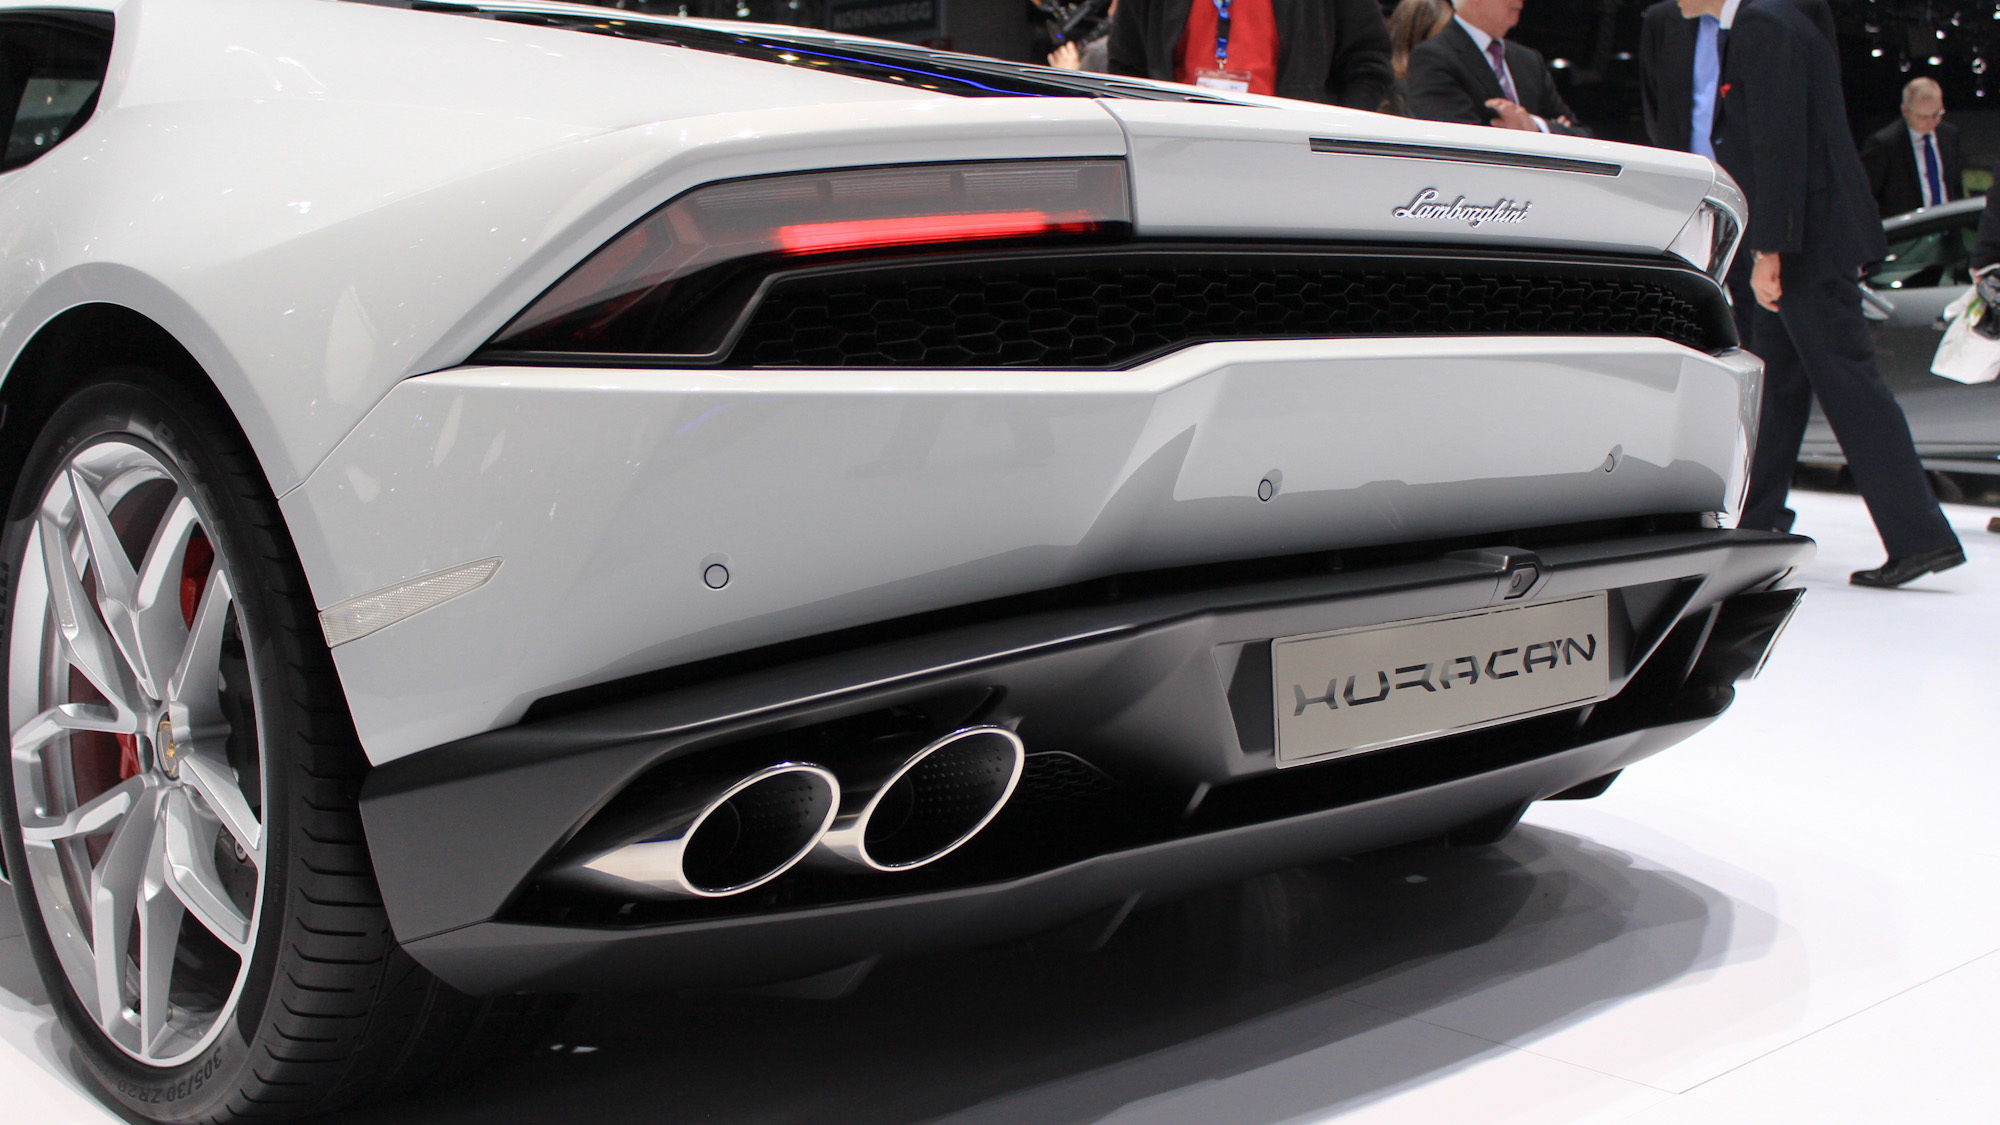 Lamborghini Huracán, 2014 Geneva Motor Show